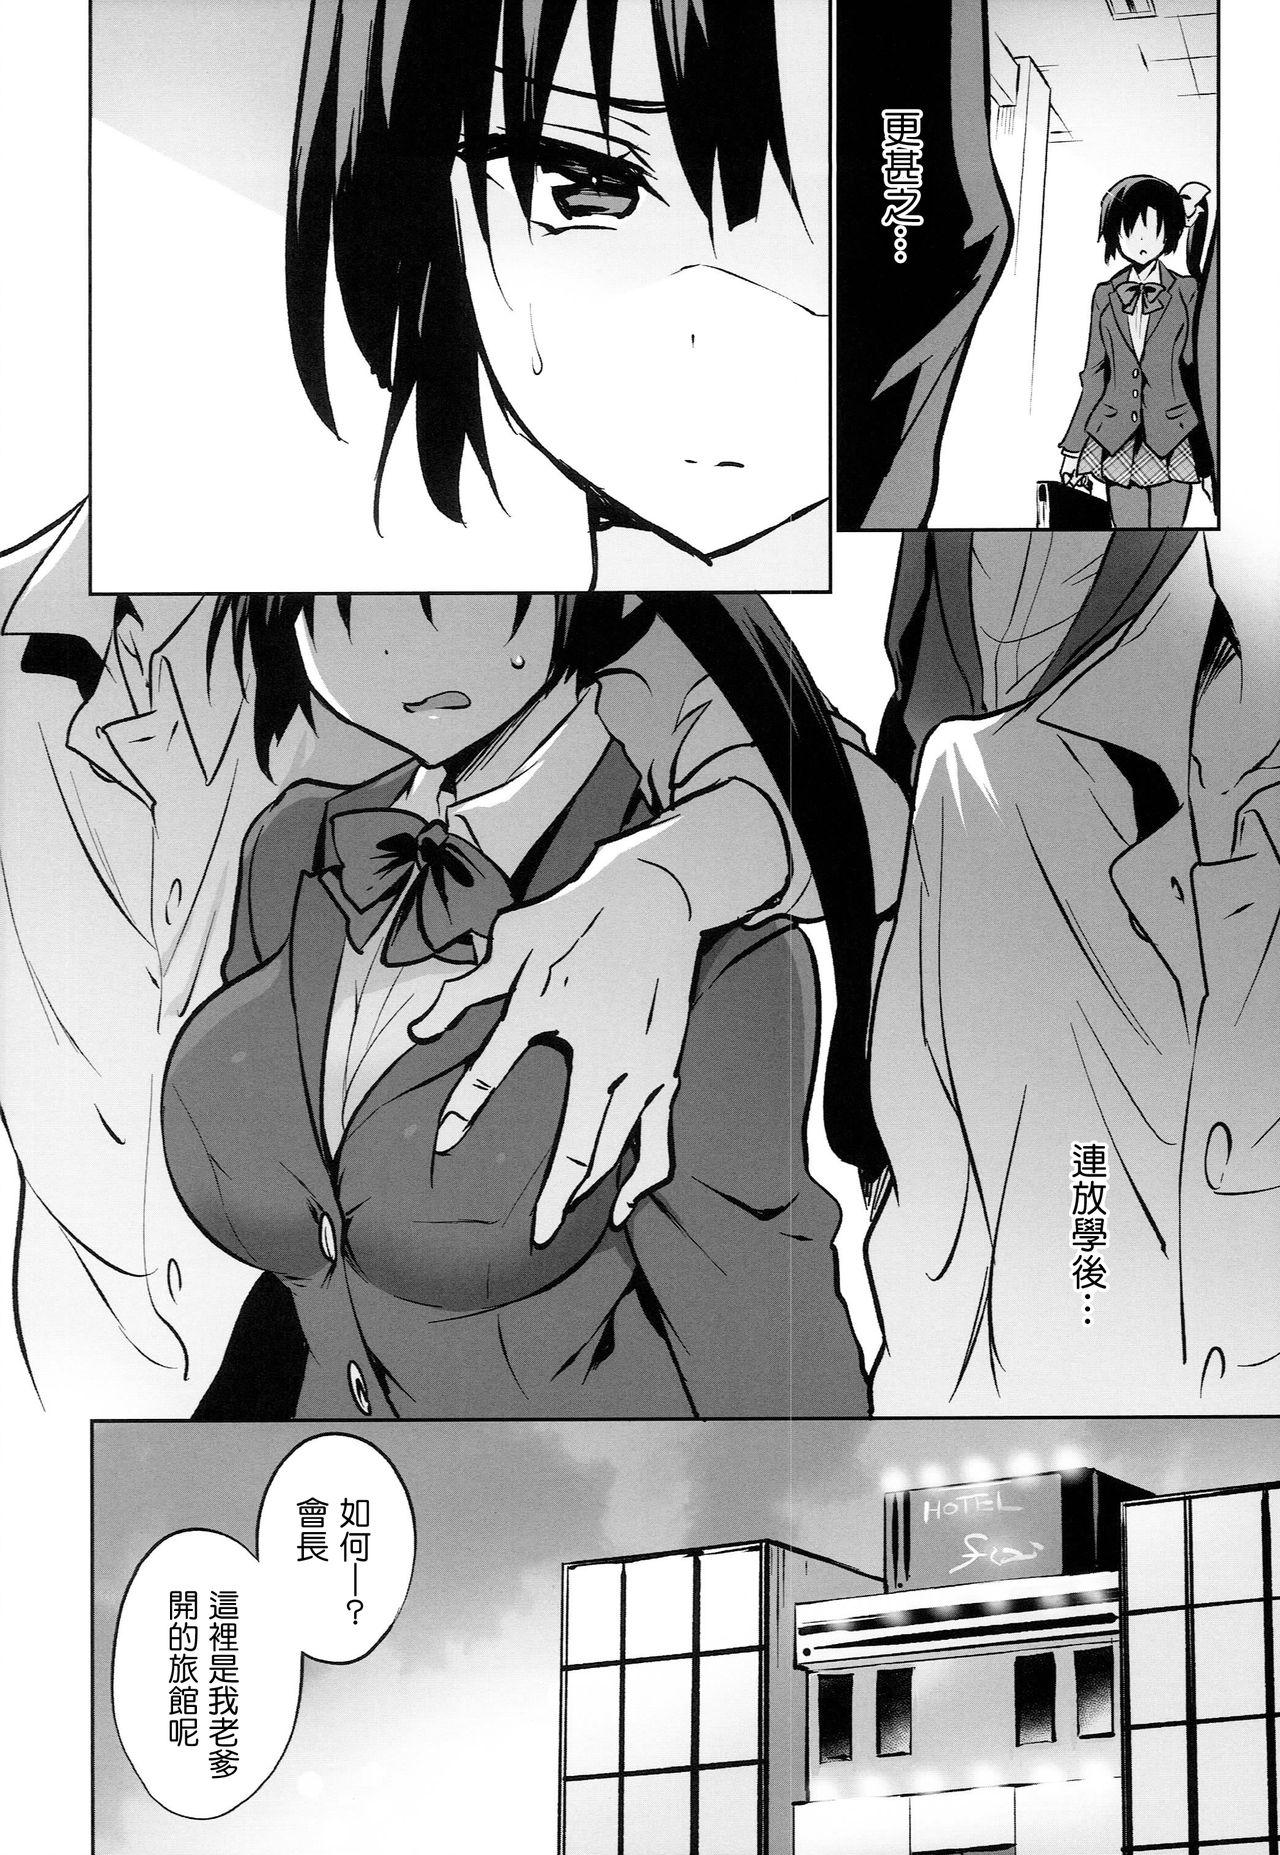 Petite Teen Gakkou de Seishun! 15 - Original Pica - Page 7